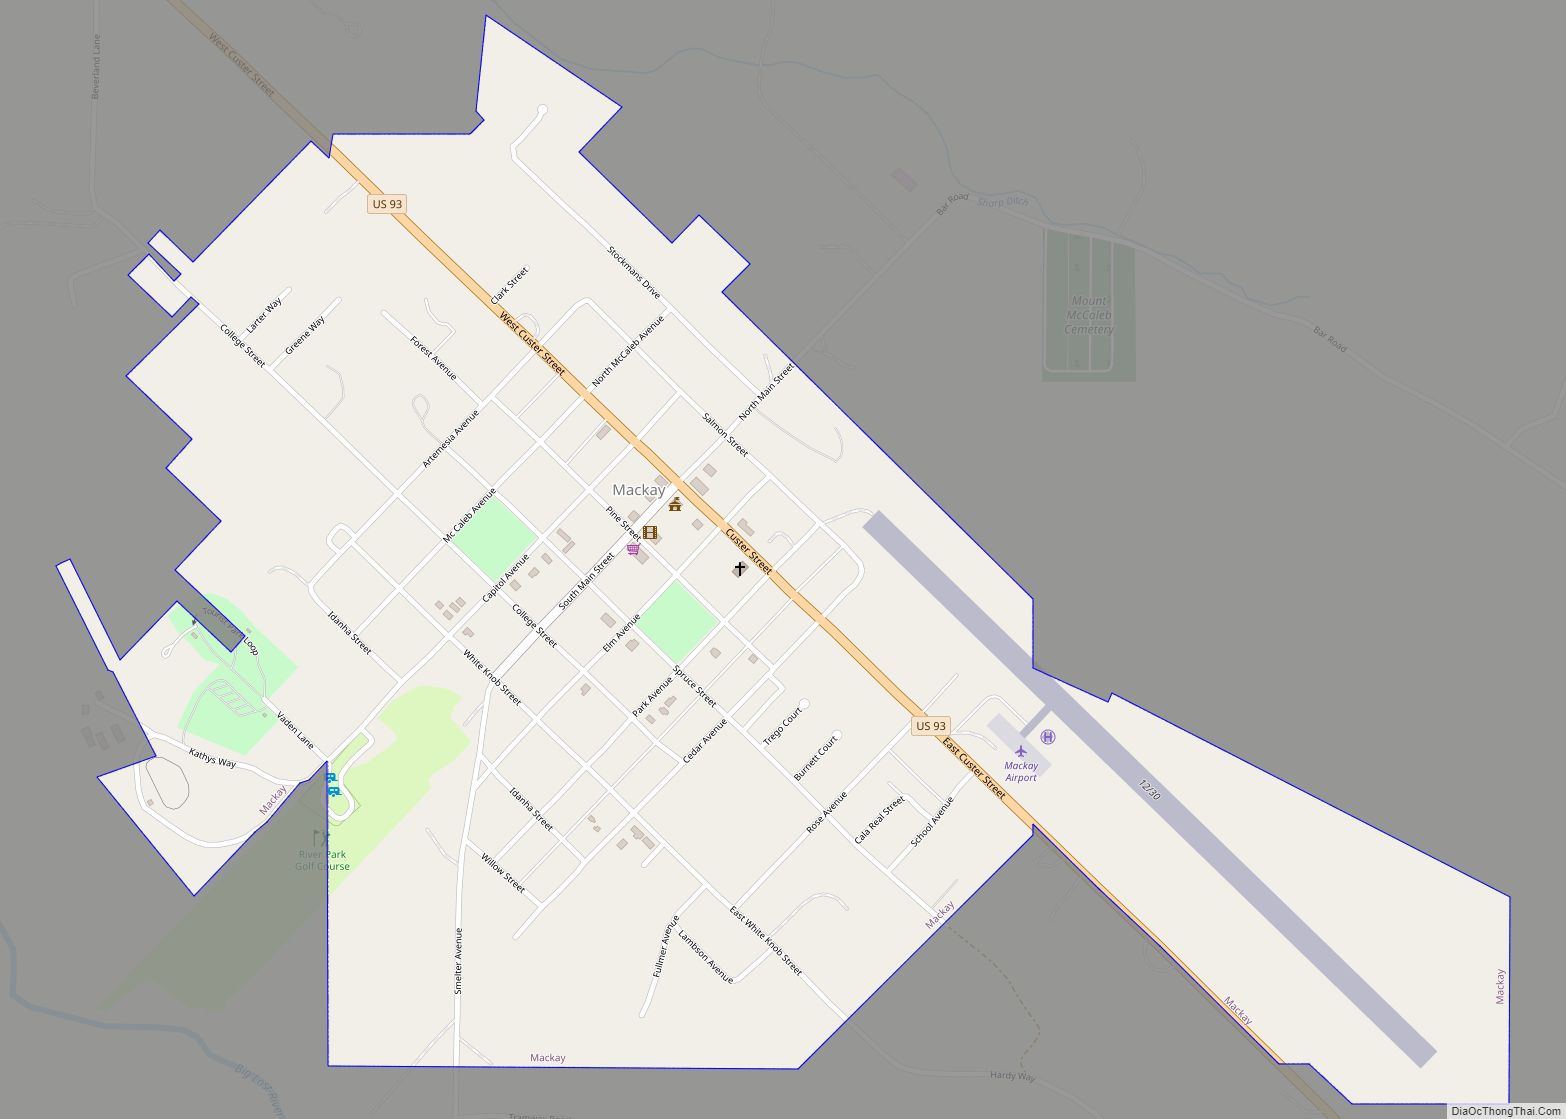 Map of Mackay city